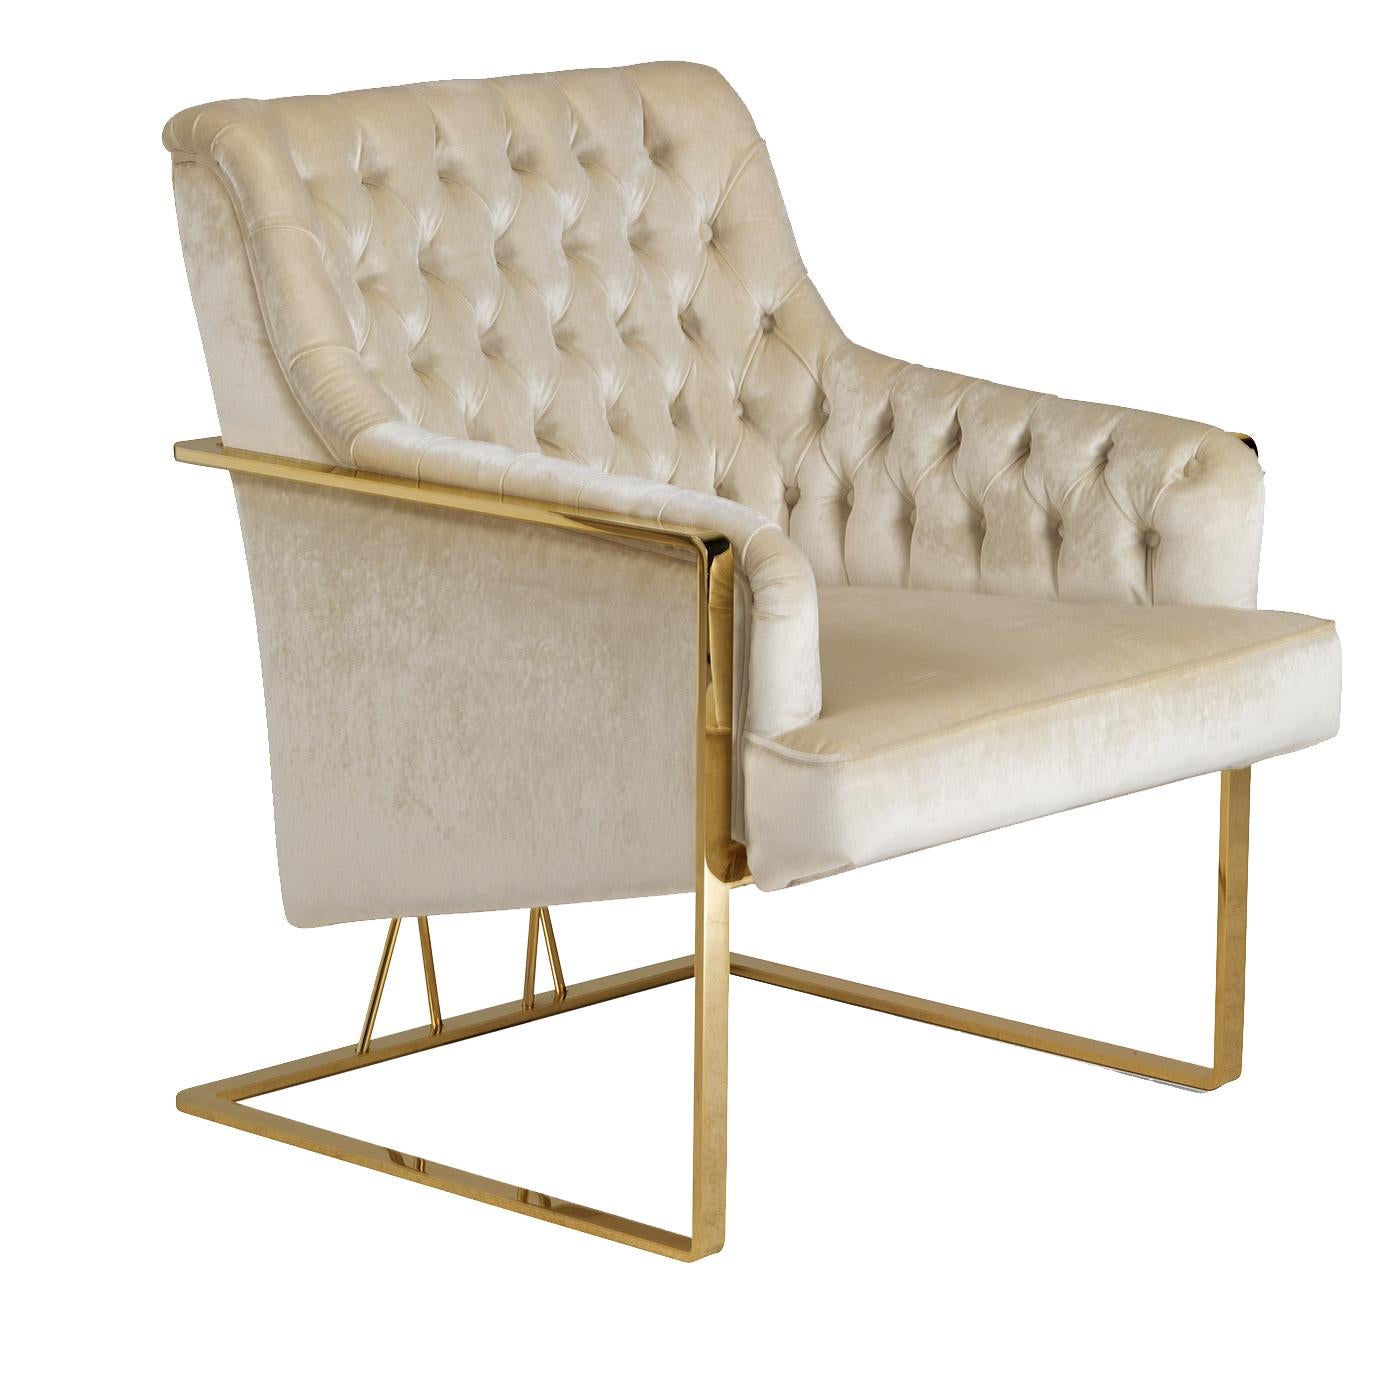 Combinaison unique de confort et de design élégant, ce fauteuil créera une ambiance sophistiquée aussi bien dans une maison classique que contemporaine. En tant que chaise d'appoint dans un salon ou une entrée, cette pièce fera une déclaration